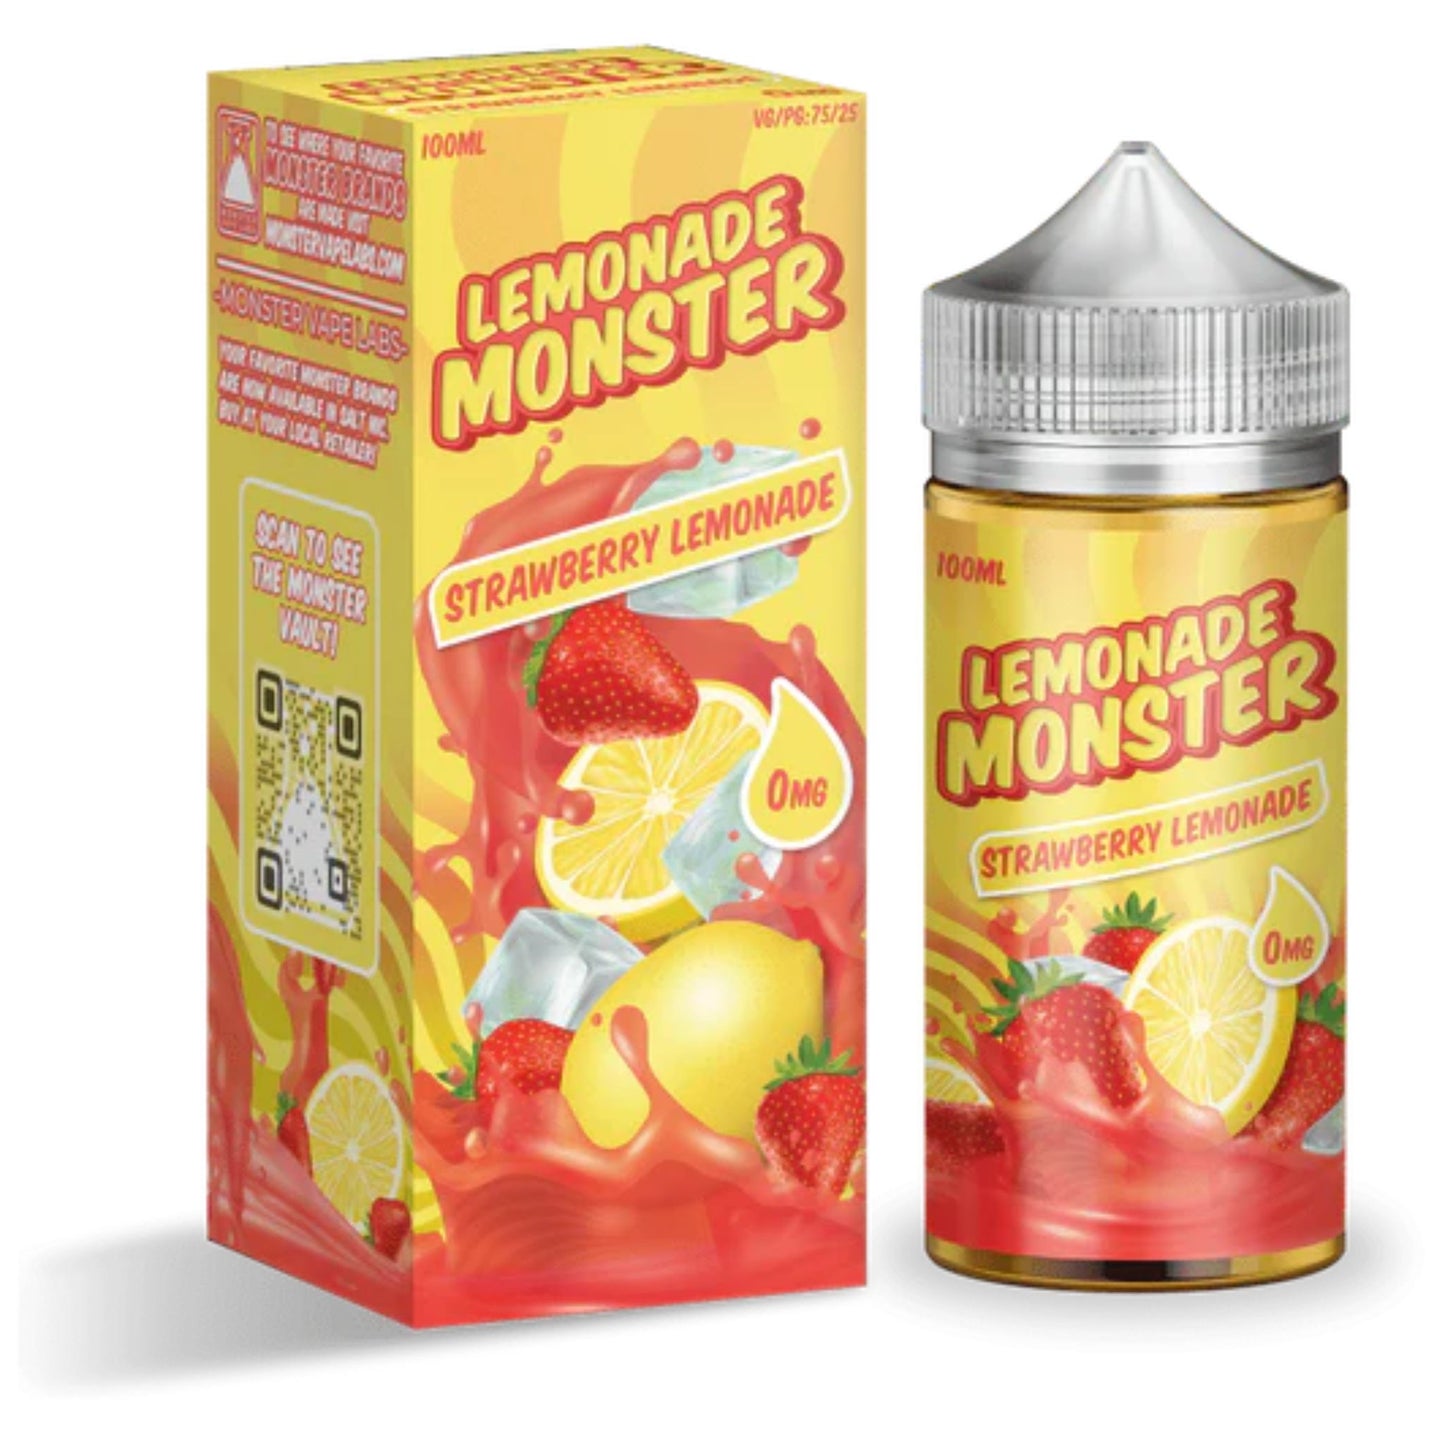 Lemonade Monster | Strawberry Lemonade | 100ml bottle and box